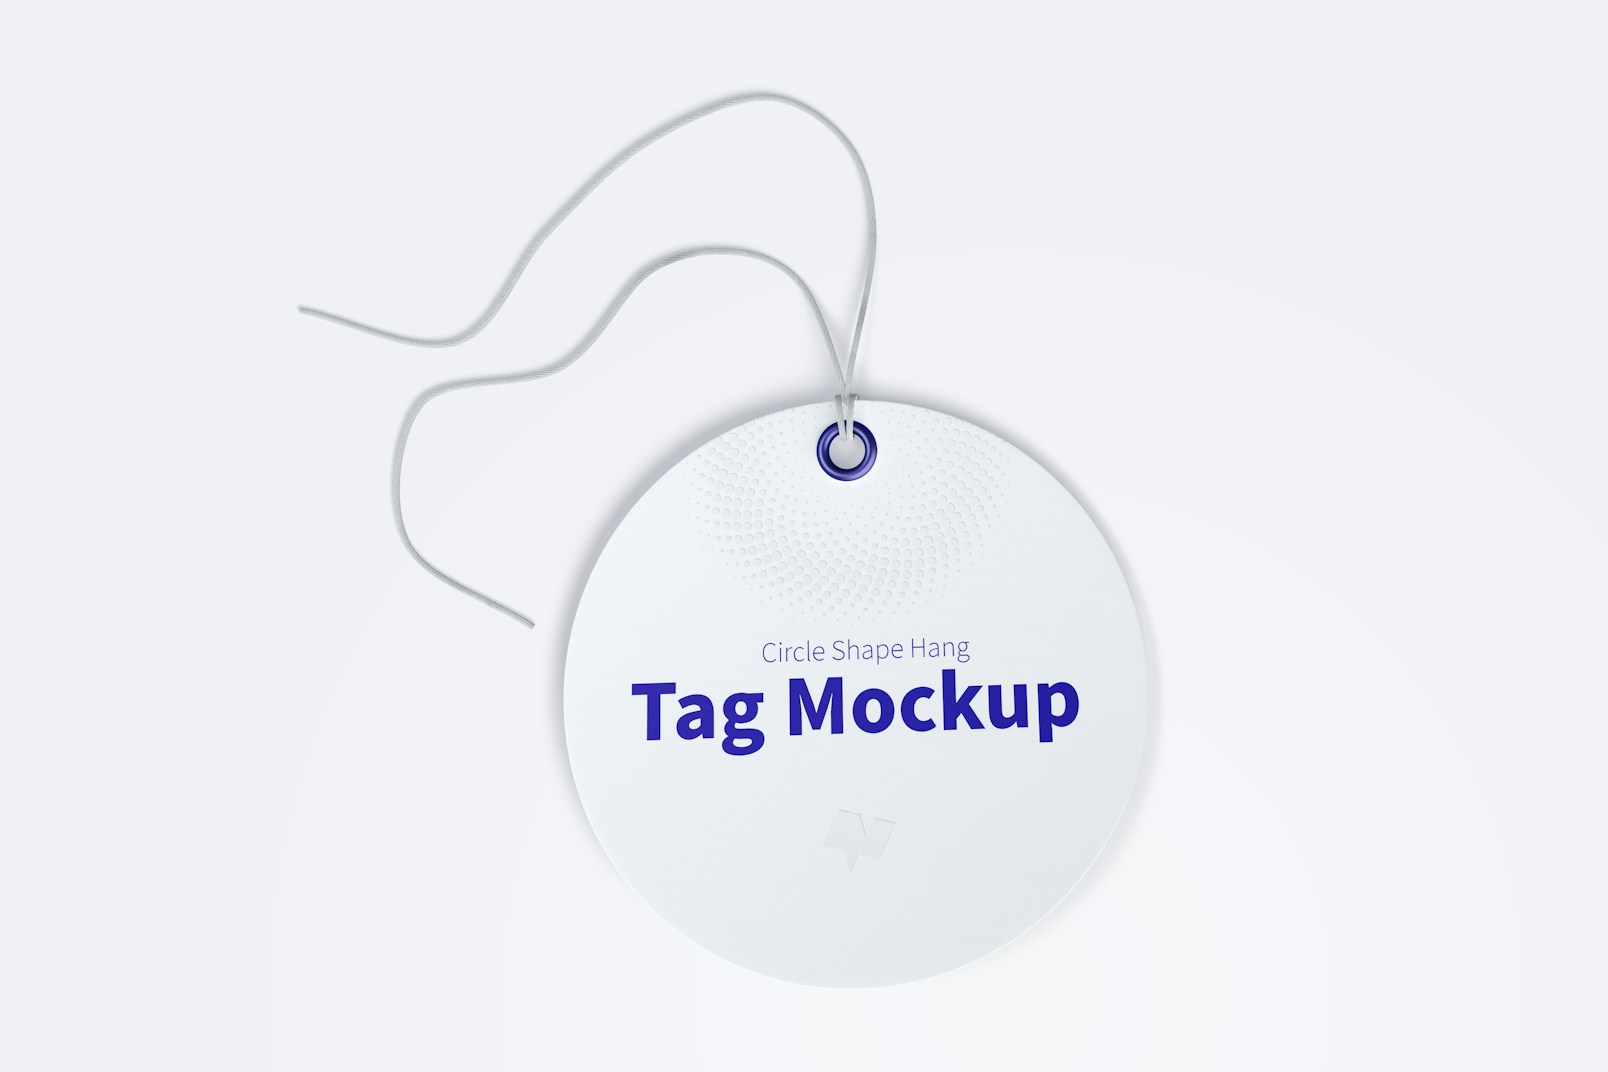 Circle Shape Hang Tag Mockup with String